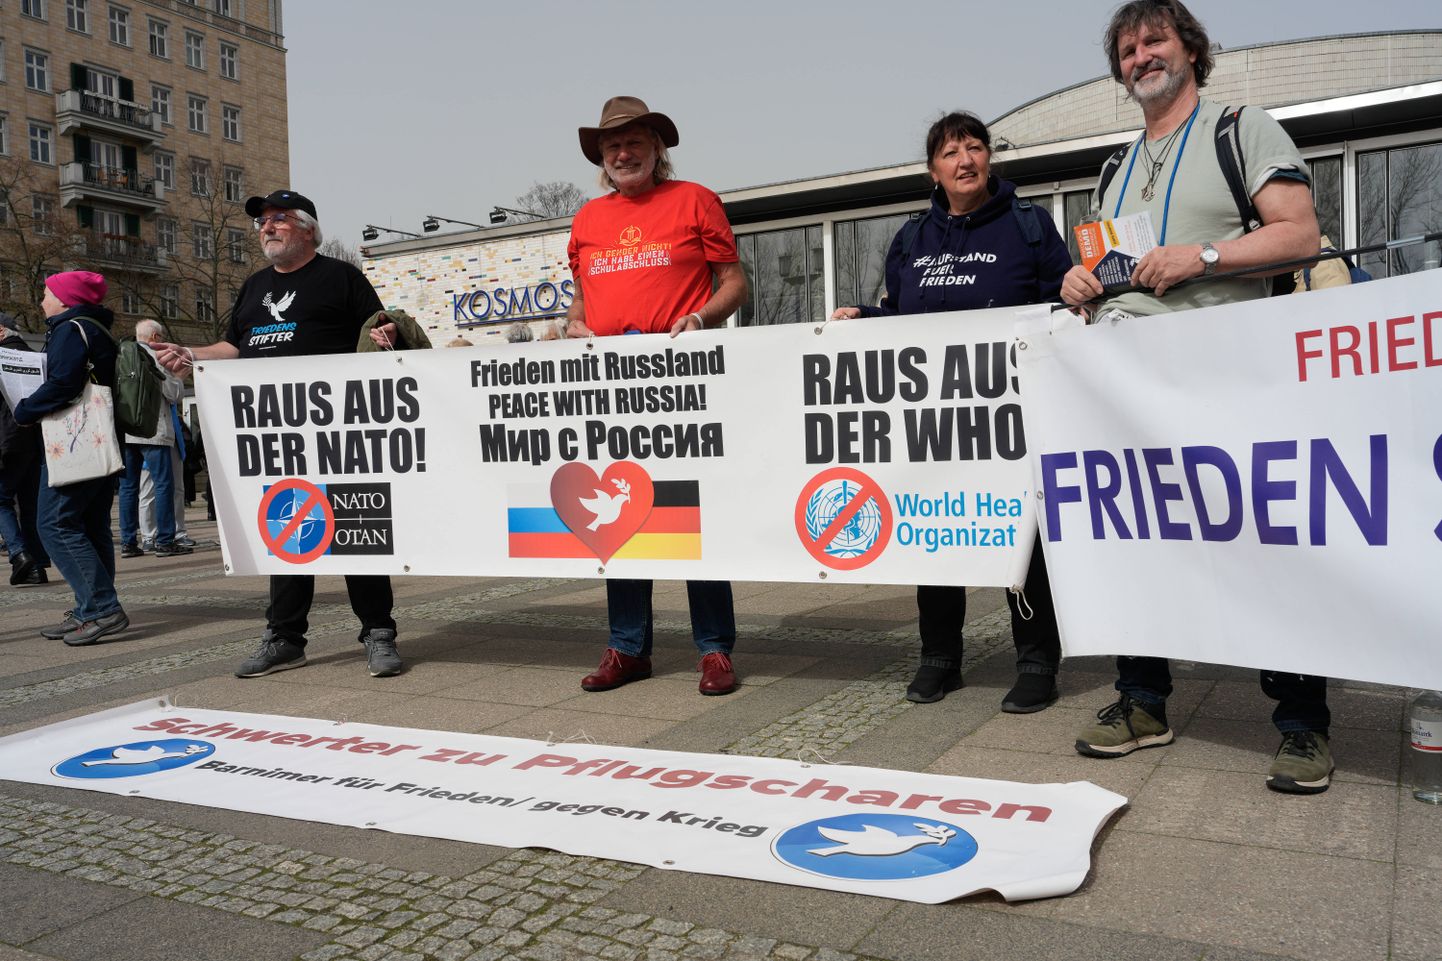 Täna Berliini lihavõttemarsile kogunenud inimesed nõuavad plakatil rahu Venemaaga ja NATOst lahkumist, aga ka välja astumist Maailma Terviseorganisatsioonist (WHO).